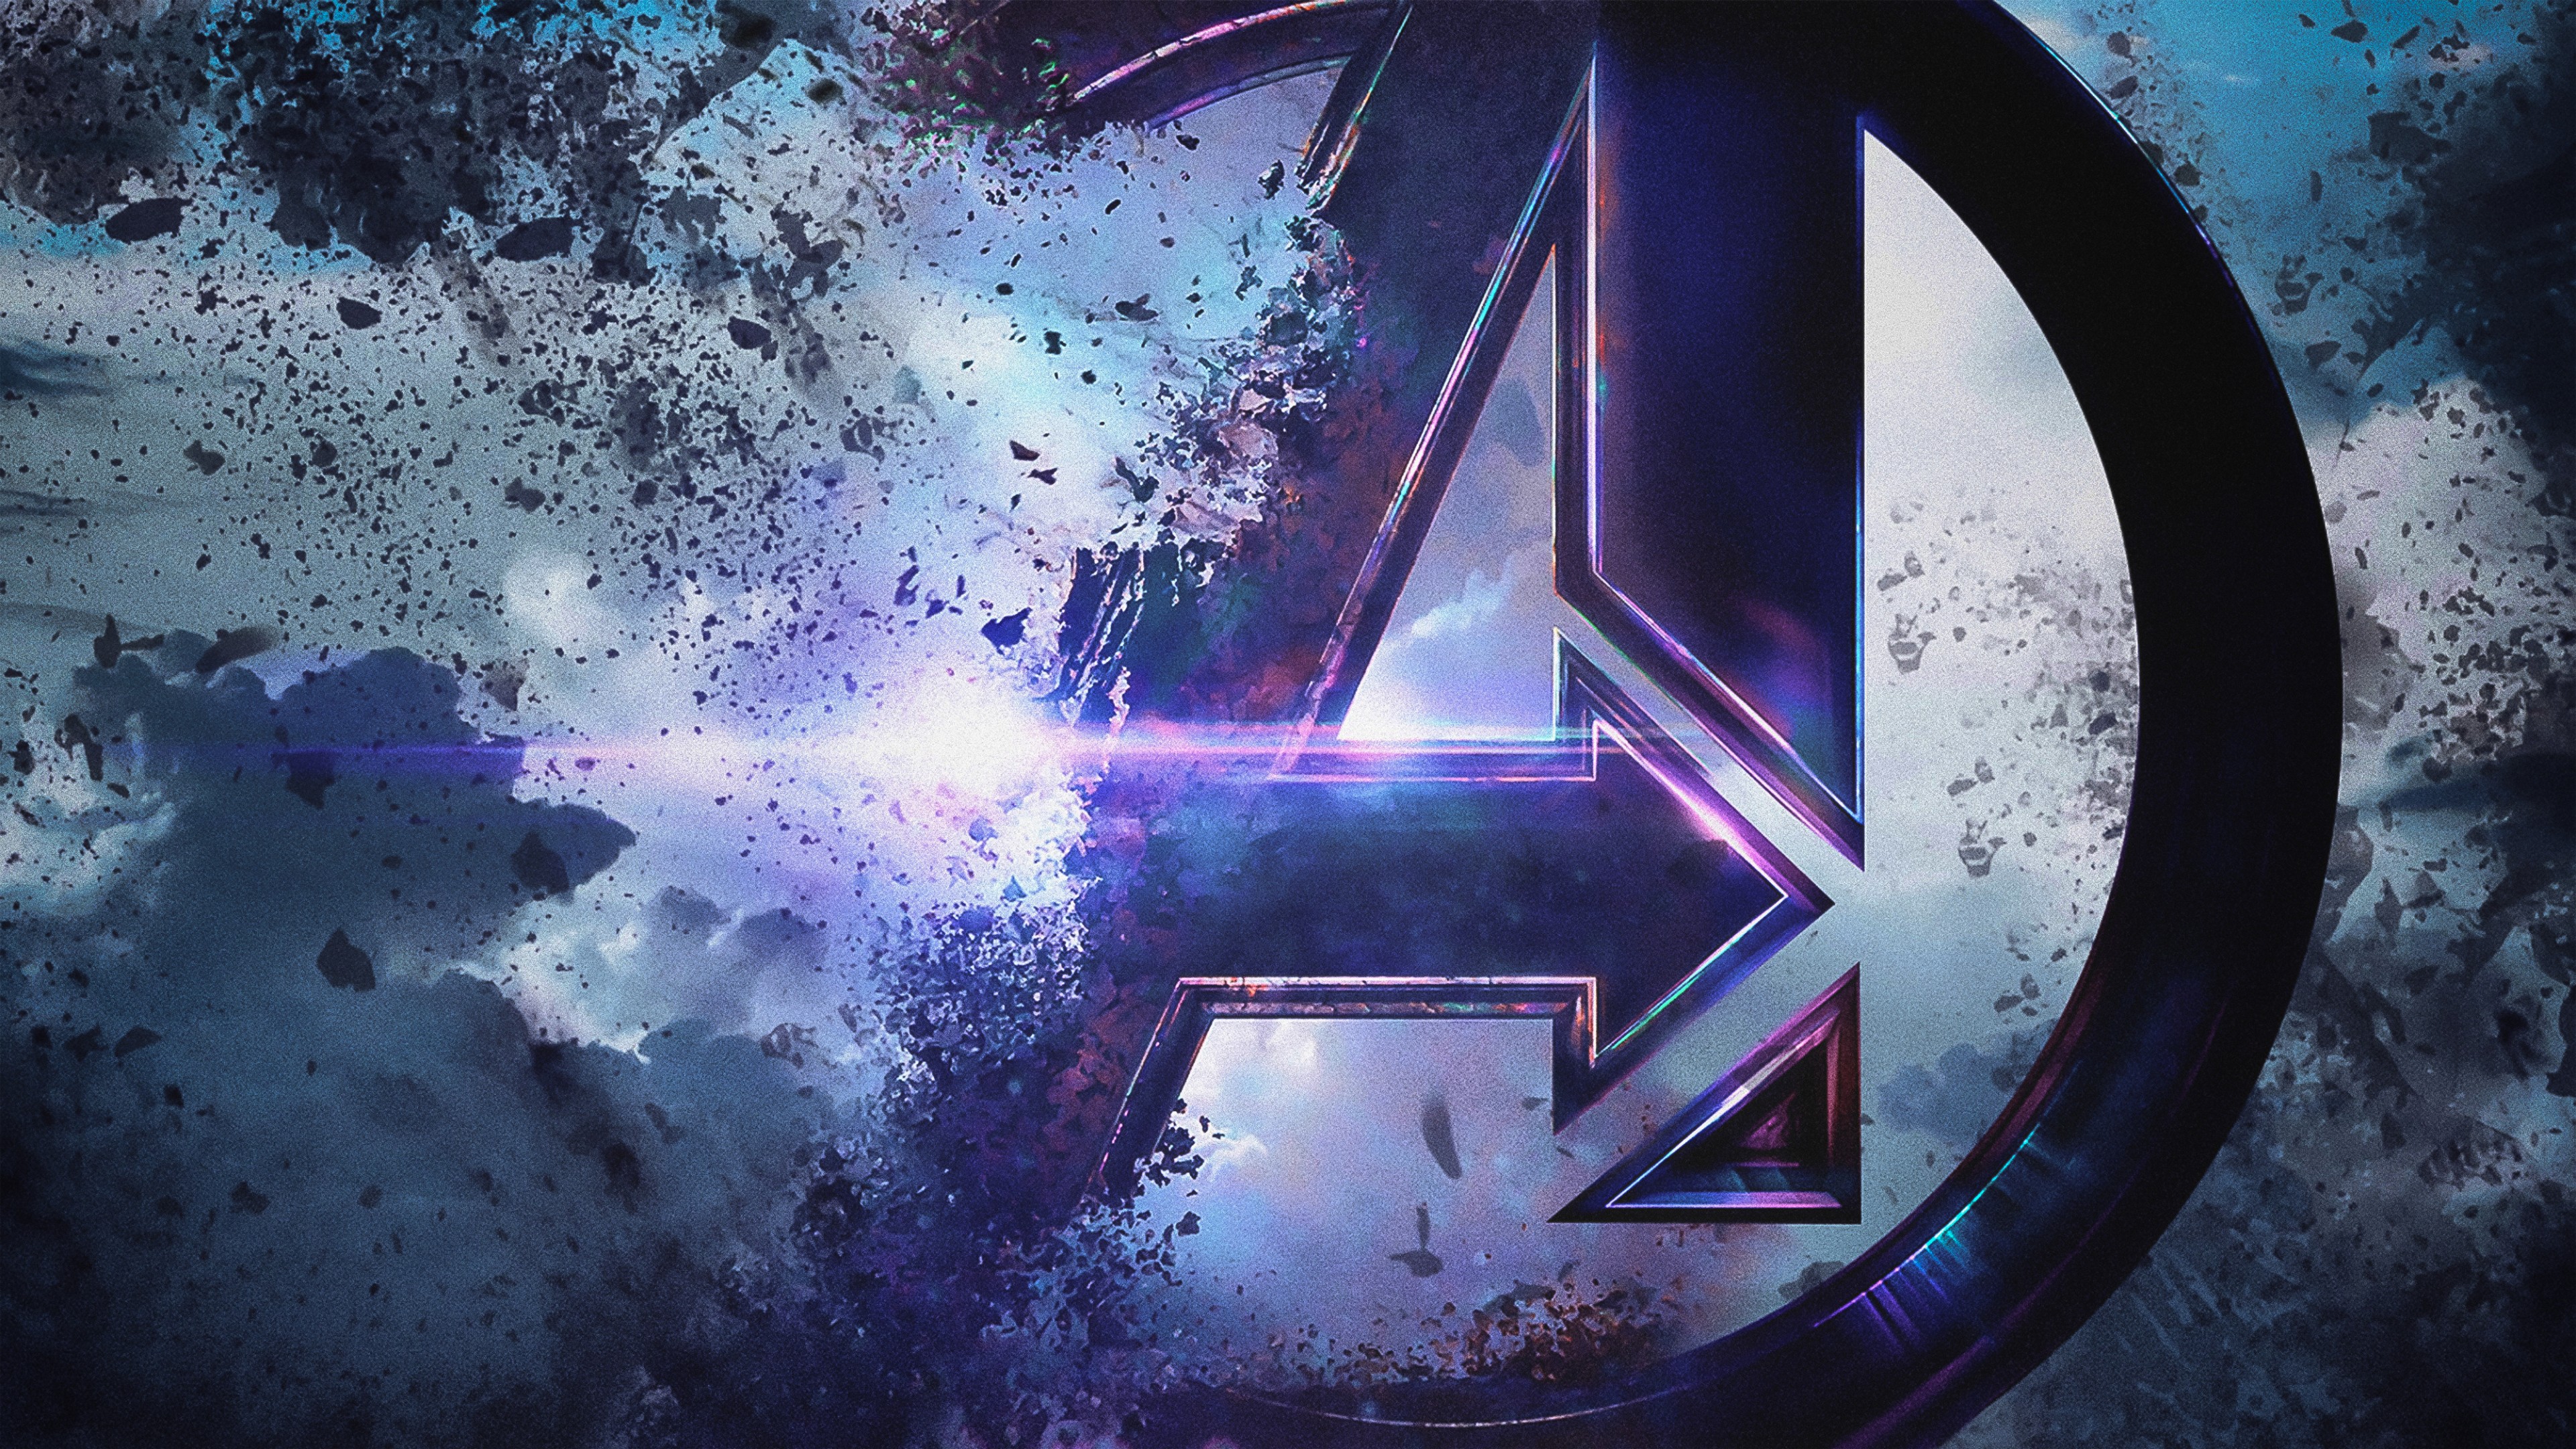 Avengers 4 Endgame 2019 Movie Keyart Wallpapers